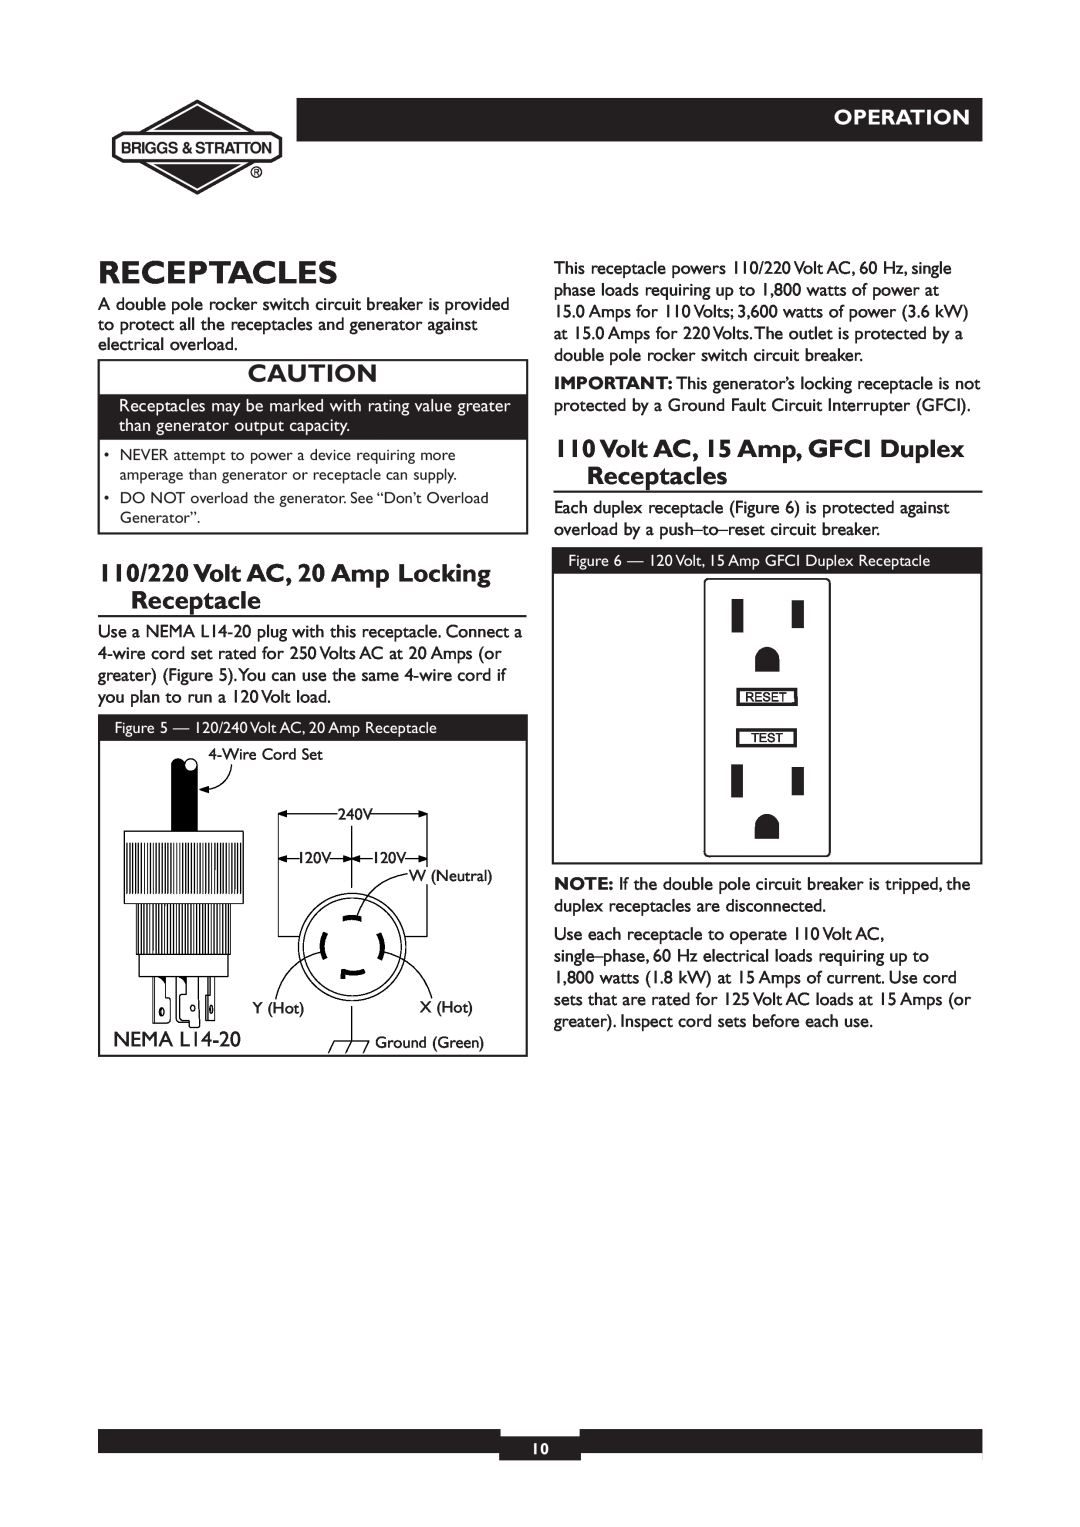 Briggs & Stratton 30231 manual 110/220 Volt AC, 20 Amp Locking Receptacle, Volt AC, 15 Amp, GFCI Duplex Receptacles 